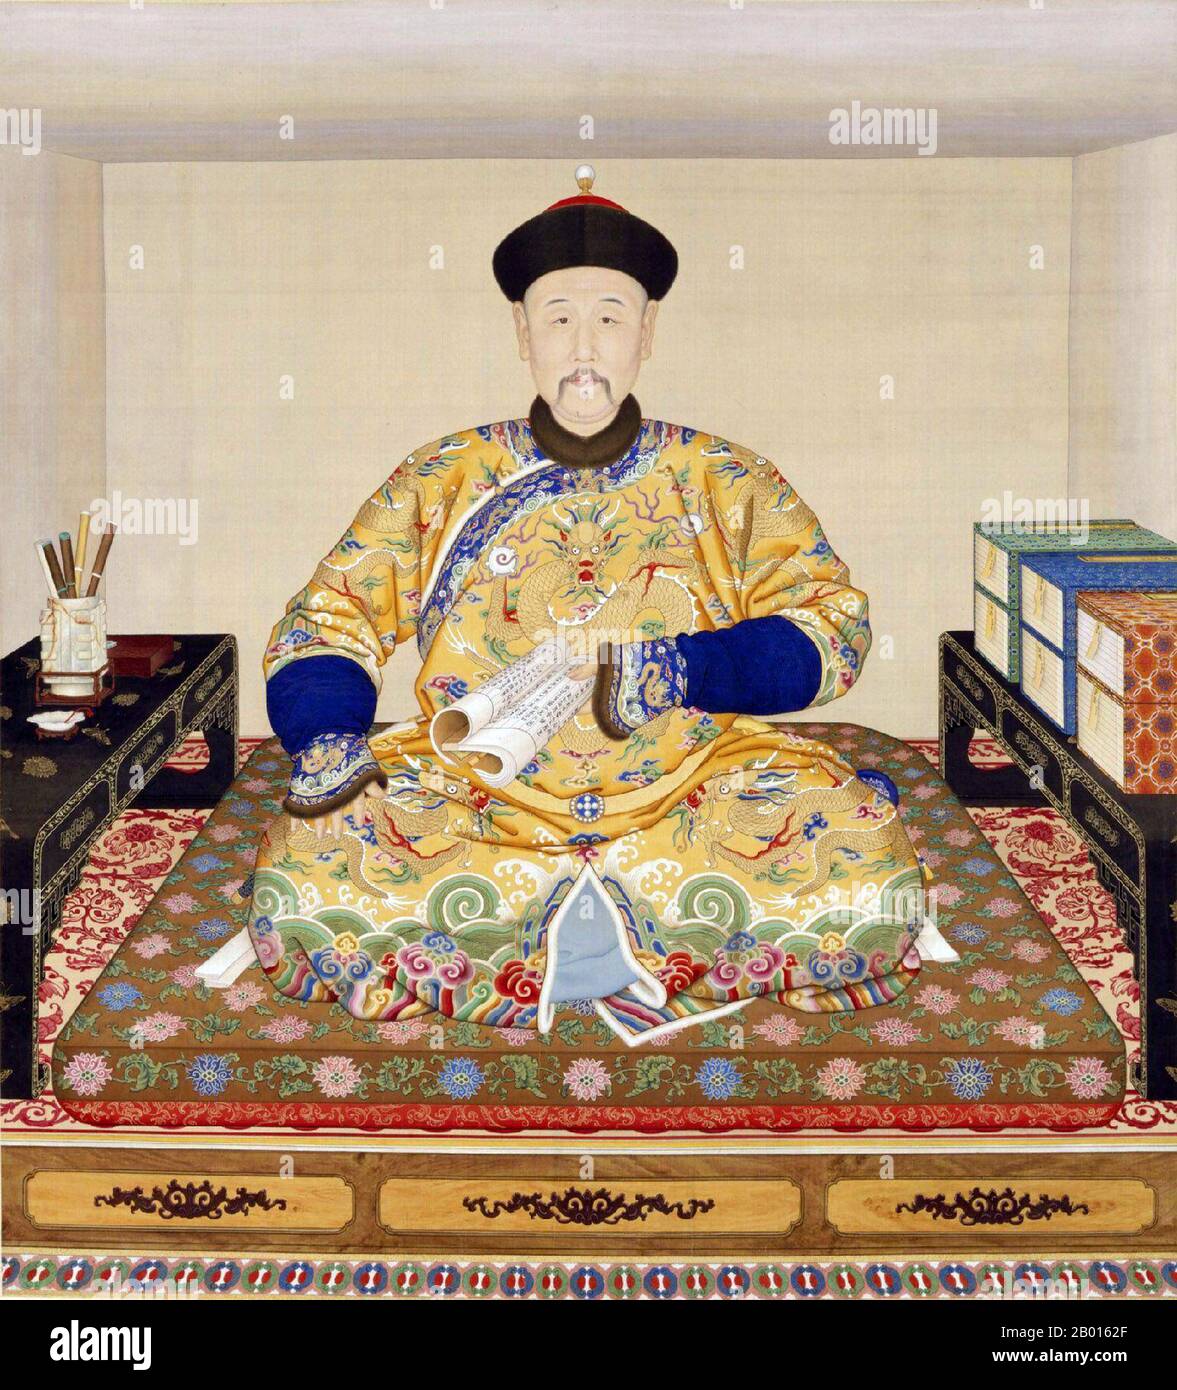 Chine : l'empereur Qianlong (25 septembre 1711 - 7 février 1799), à sa table d'écriture. Toile de défilement suspendue par Giuseppe Castiglione (1688-1766), c. 1750. L'empereur Qianlong, né Hongli et temple du nom de Gaozong, était le cinquième empereur de la dynastie Qing. Quatrième fils de l'empereur Yongzheng, il régna officiellement de 1735 à 1796, avant de s'abdiquer en faveur de son fils, l'empereur Jiaqing - un acte filial pour ne pas gouverner plus longtemps que son grand-père, l'empereur Kangxi. Malgré sa retraite, il a conservé le pouvoir ultime jusqu'à sa mort. Banque D'Images